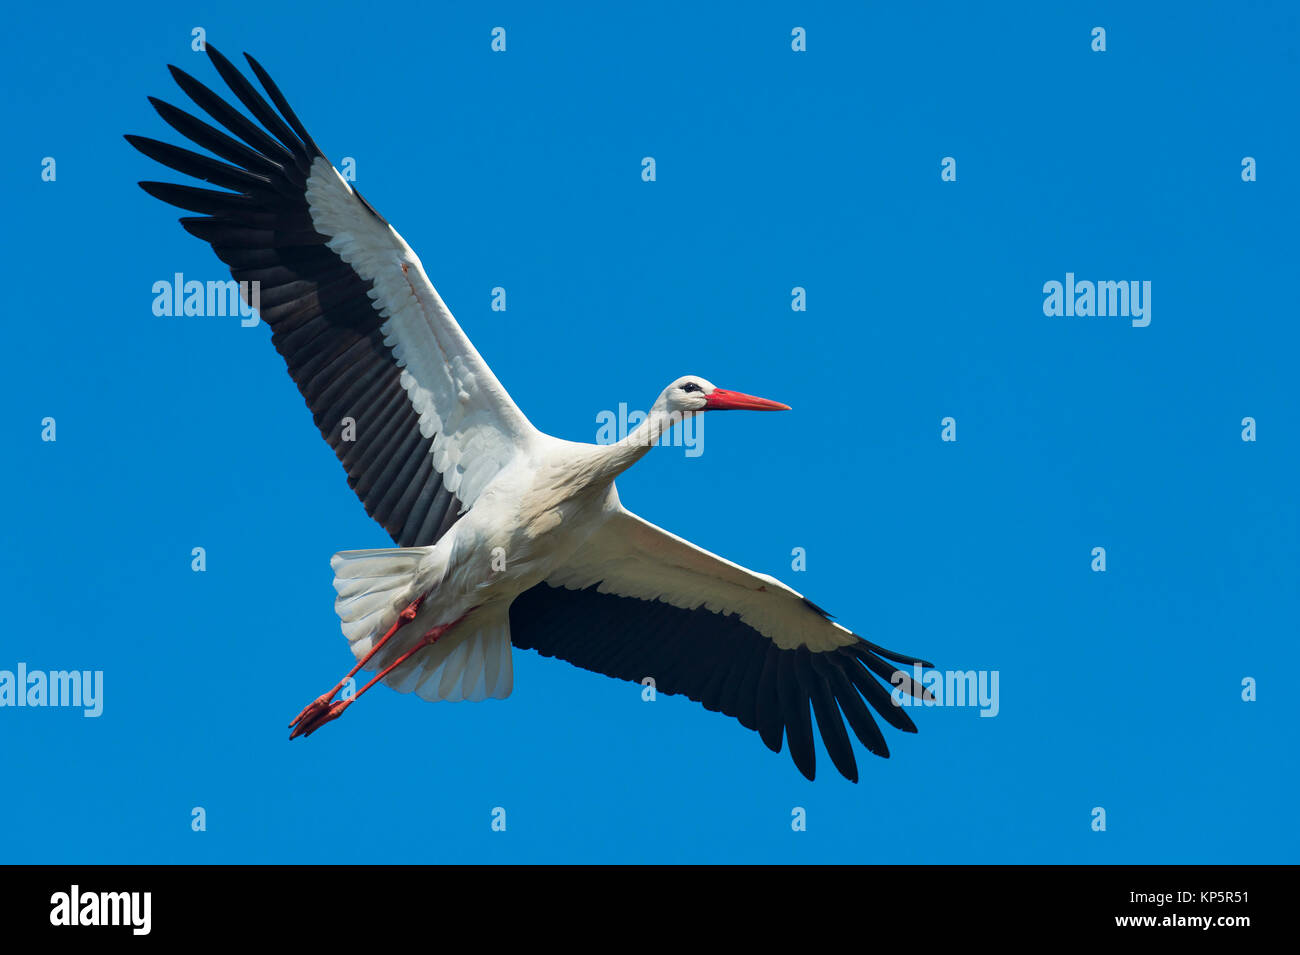 Fliegender Weissstorch, white stork in flight Stock Photo